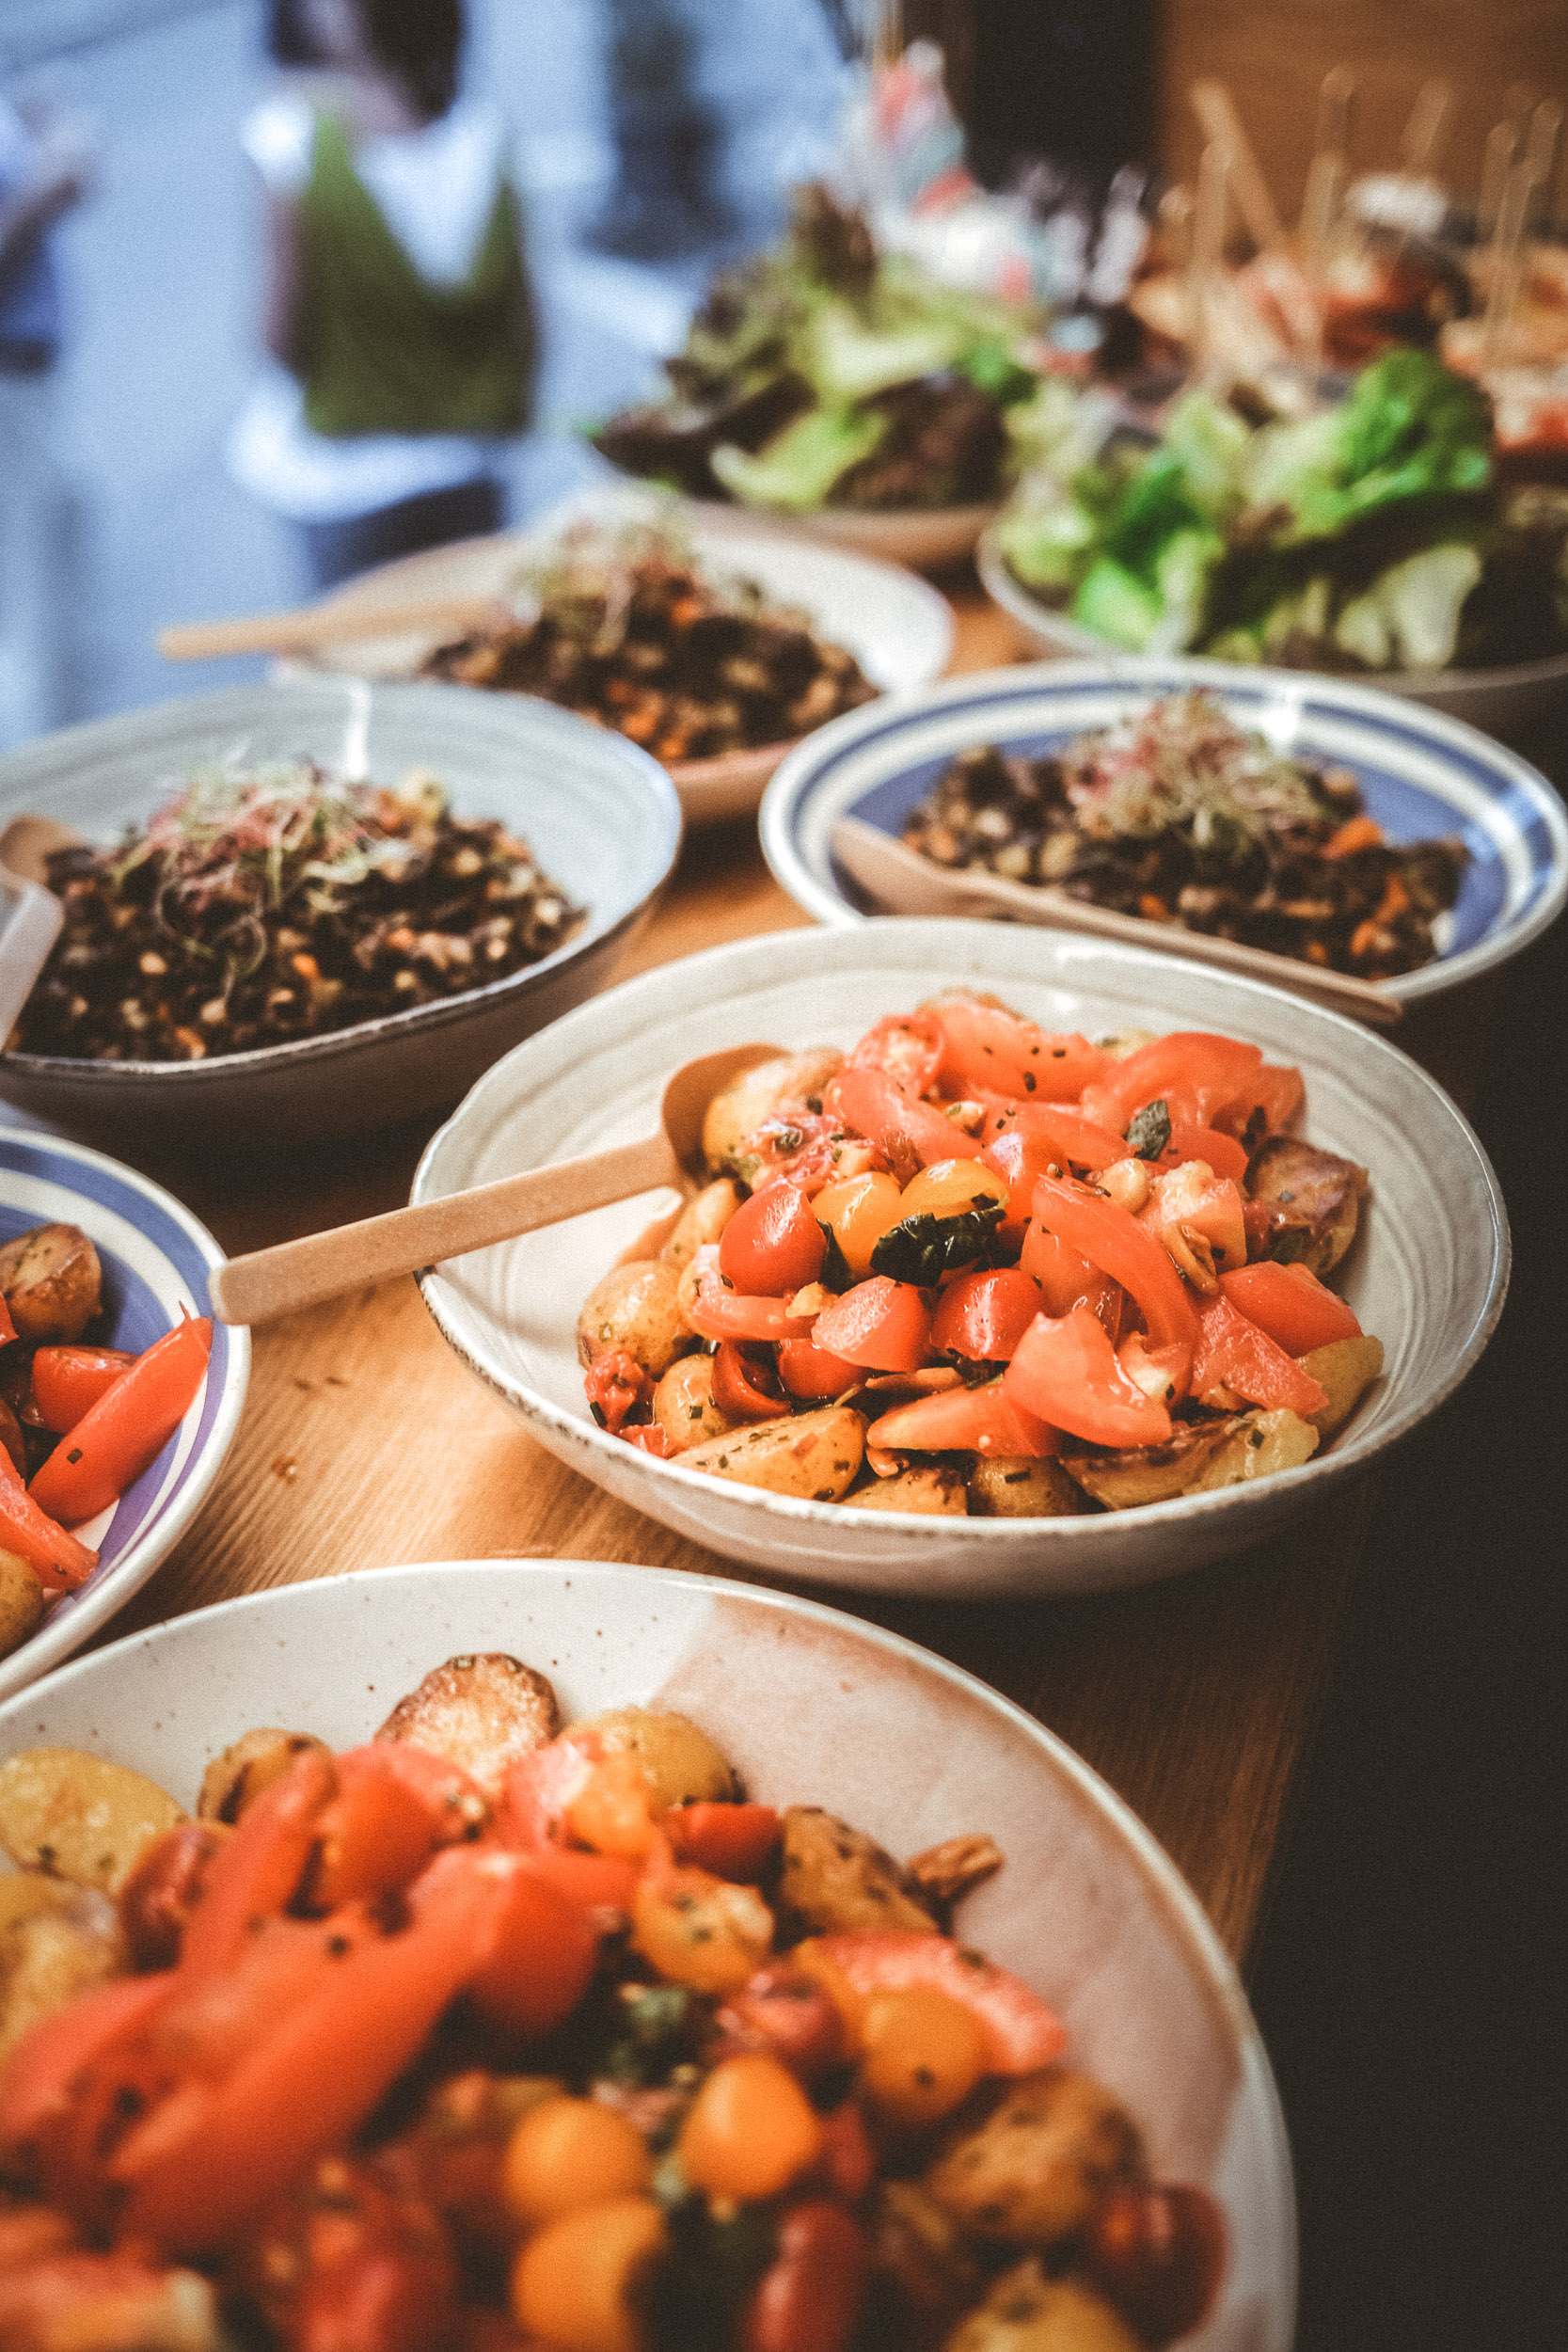 EIne Auswahl an vegetarischen Gerichten im Foodtruck - Tomatensalat, Linsensalat, Blattsalat